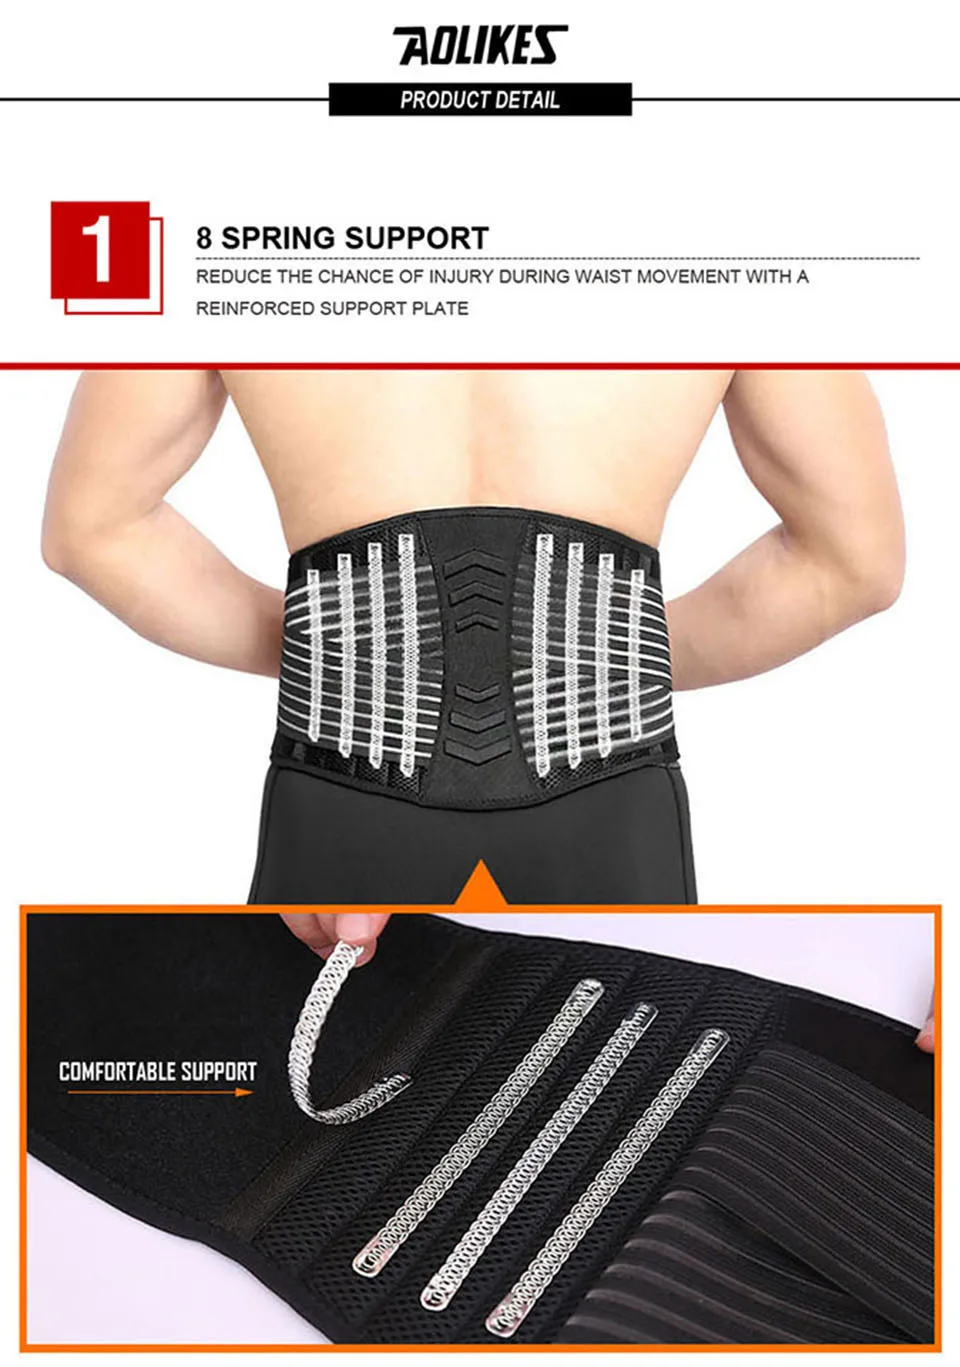 AOLIKES спортивный дышащий регулируемый пояс для поддержки талии, пояс для спины, поддерживающий Поясничный пояс, защитное снаряжение, поддерживающий пояс для позвоночника